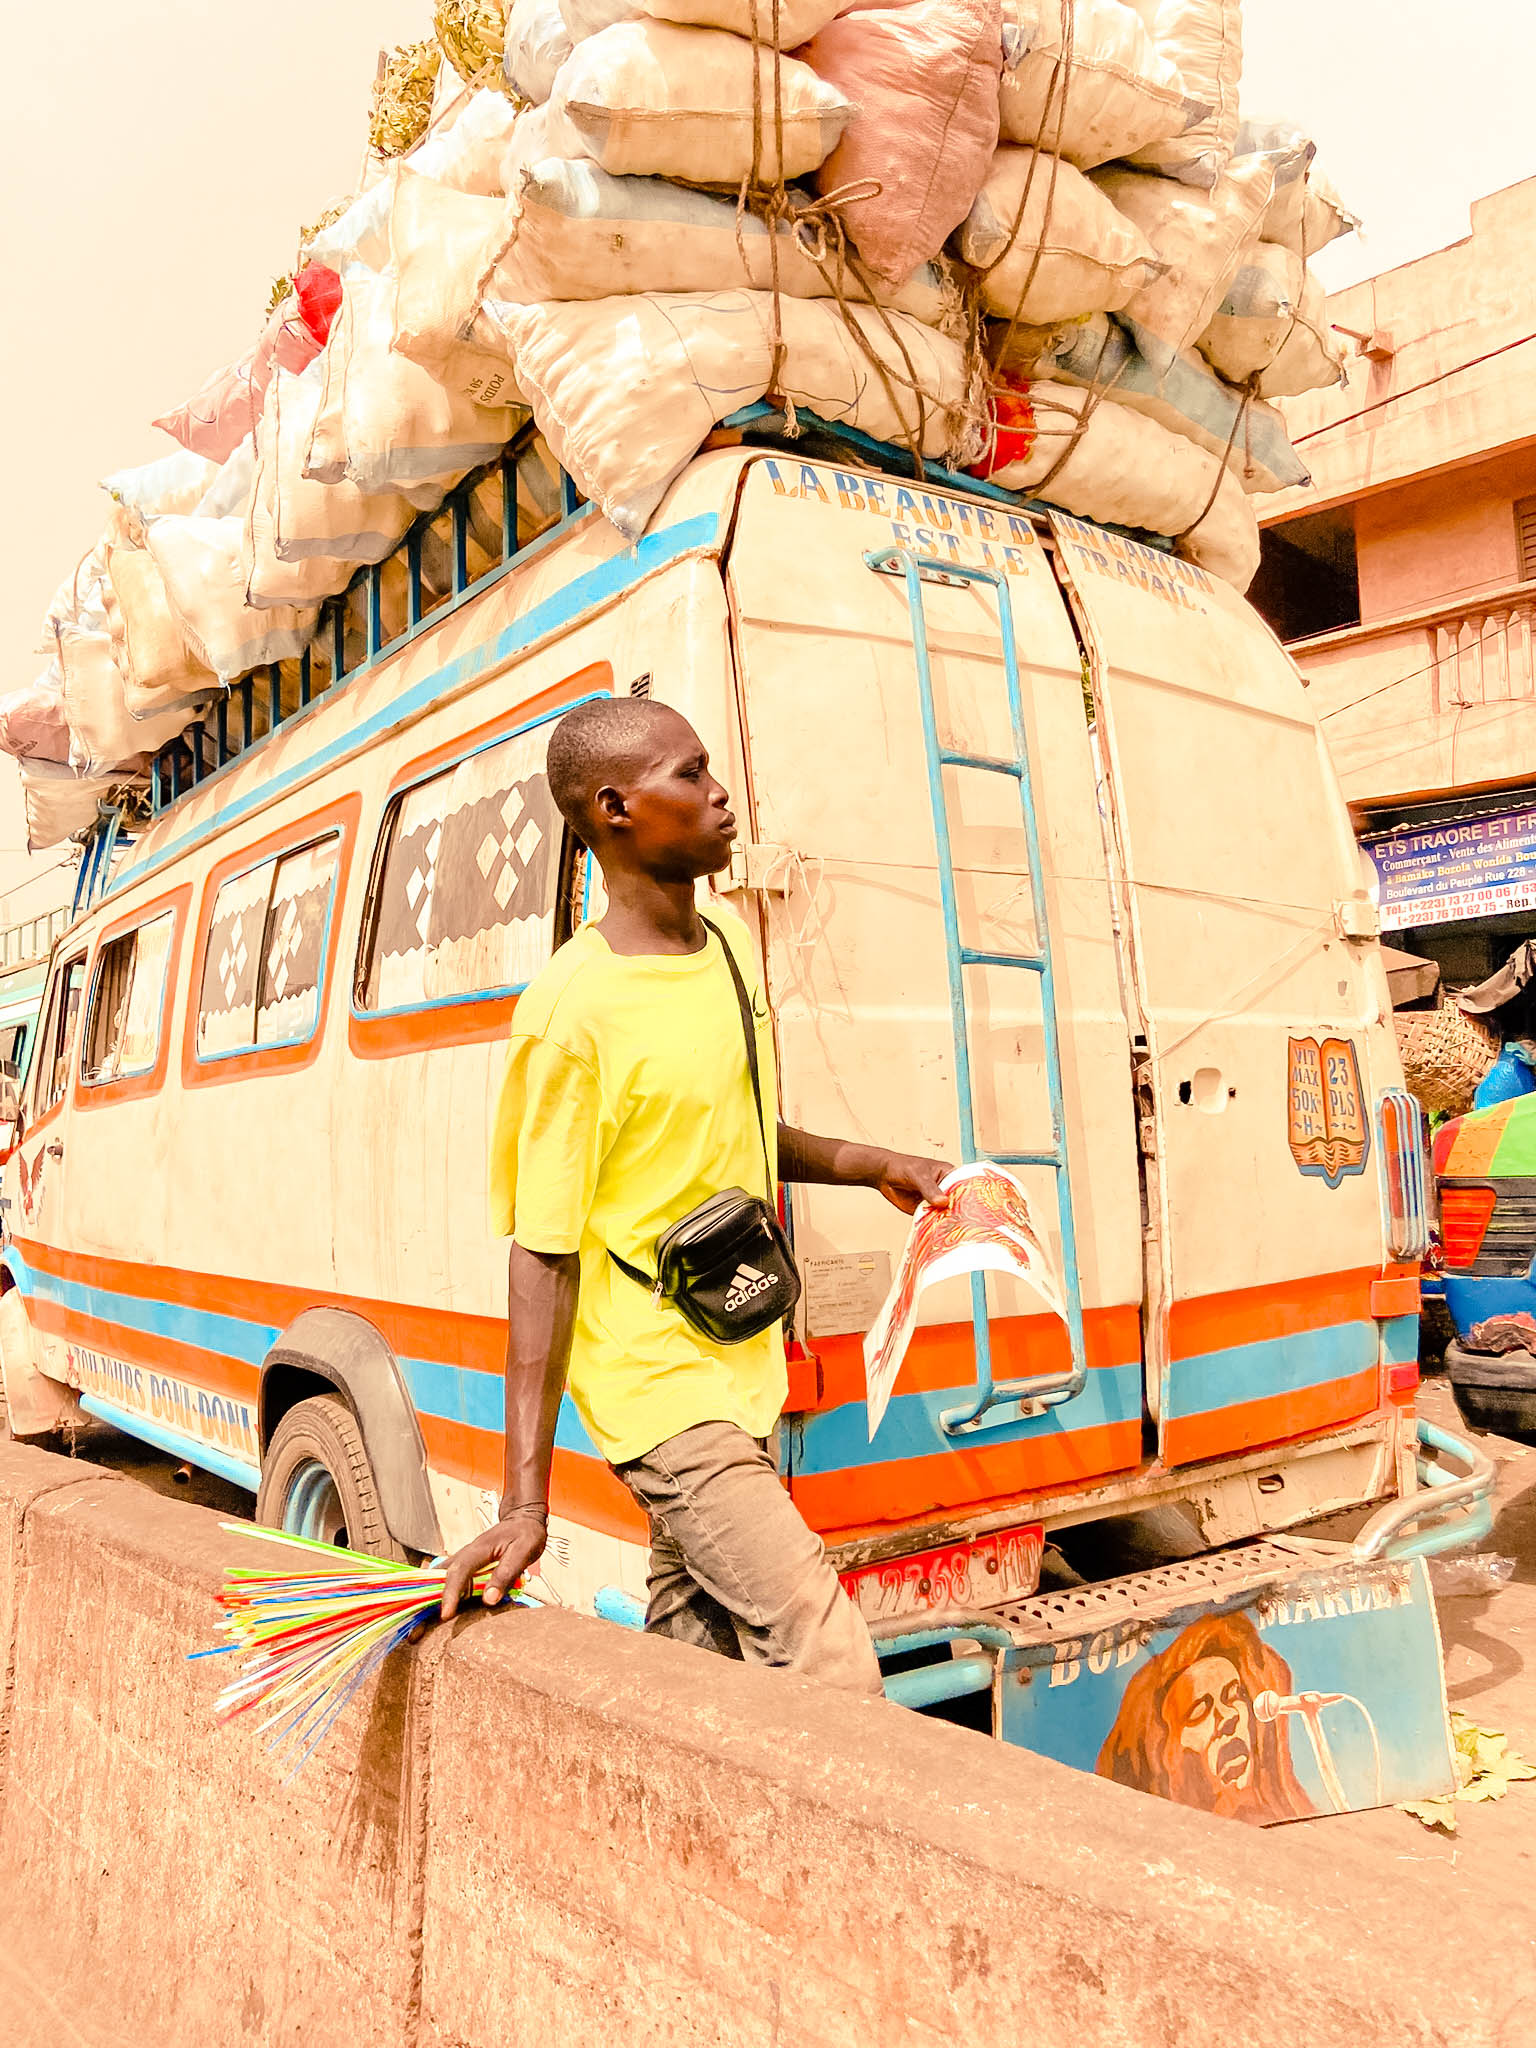 Endroit à visiter à bamako : Le grand marché et l'artisanat - Pays d'Afrique à visiter